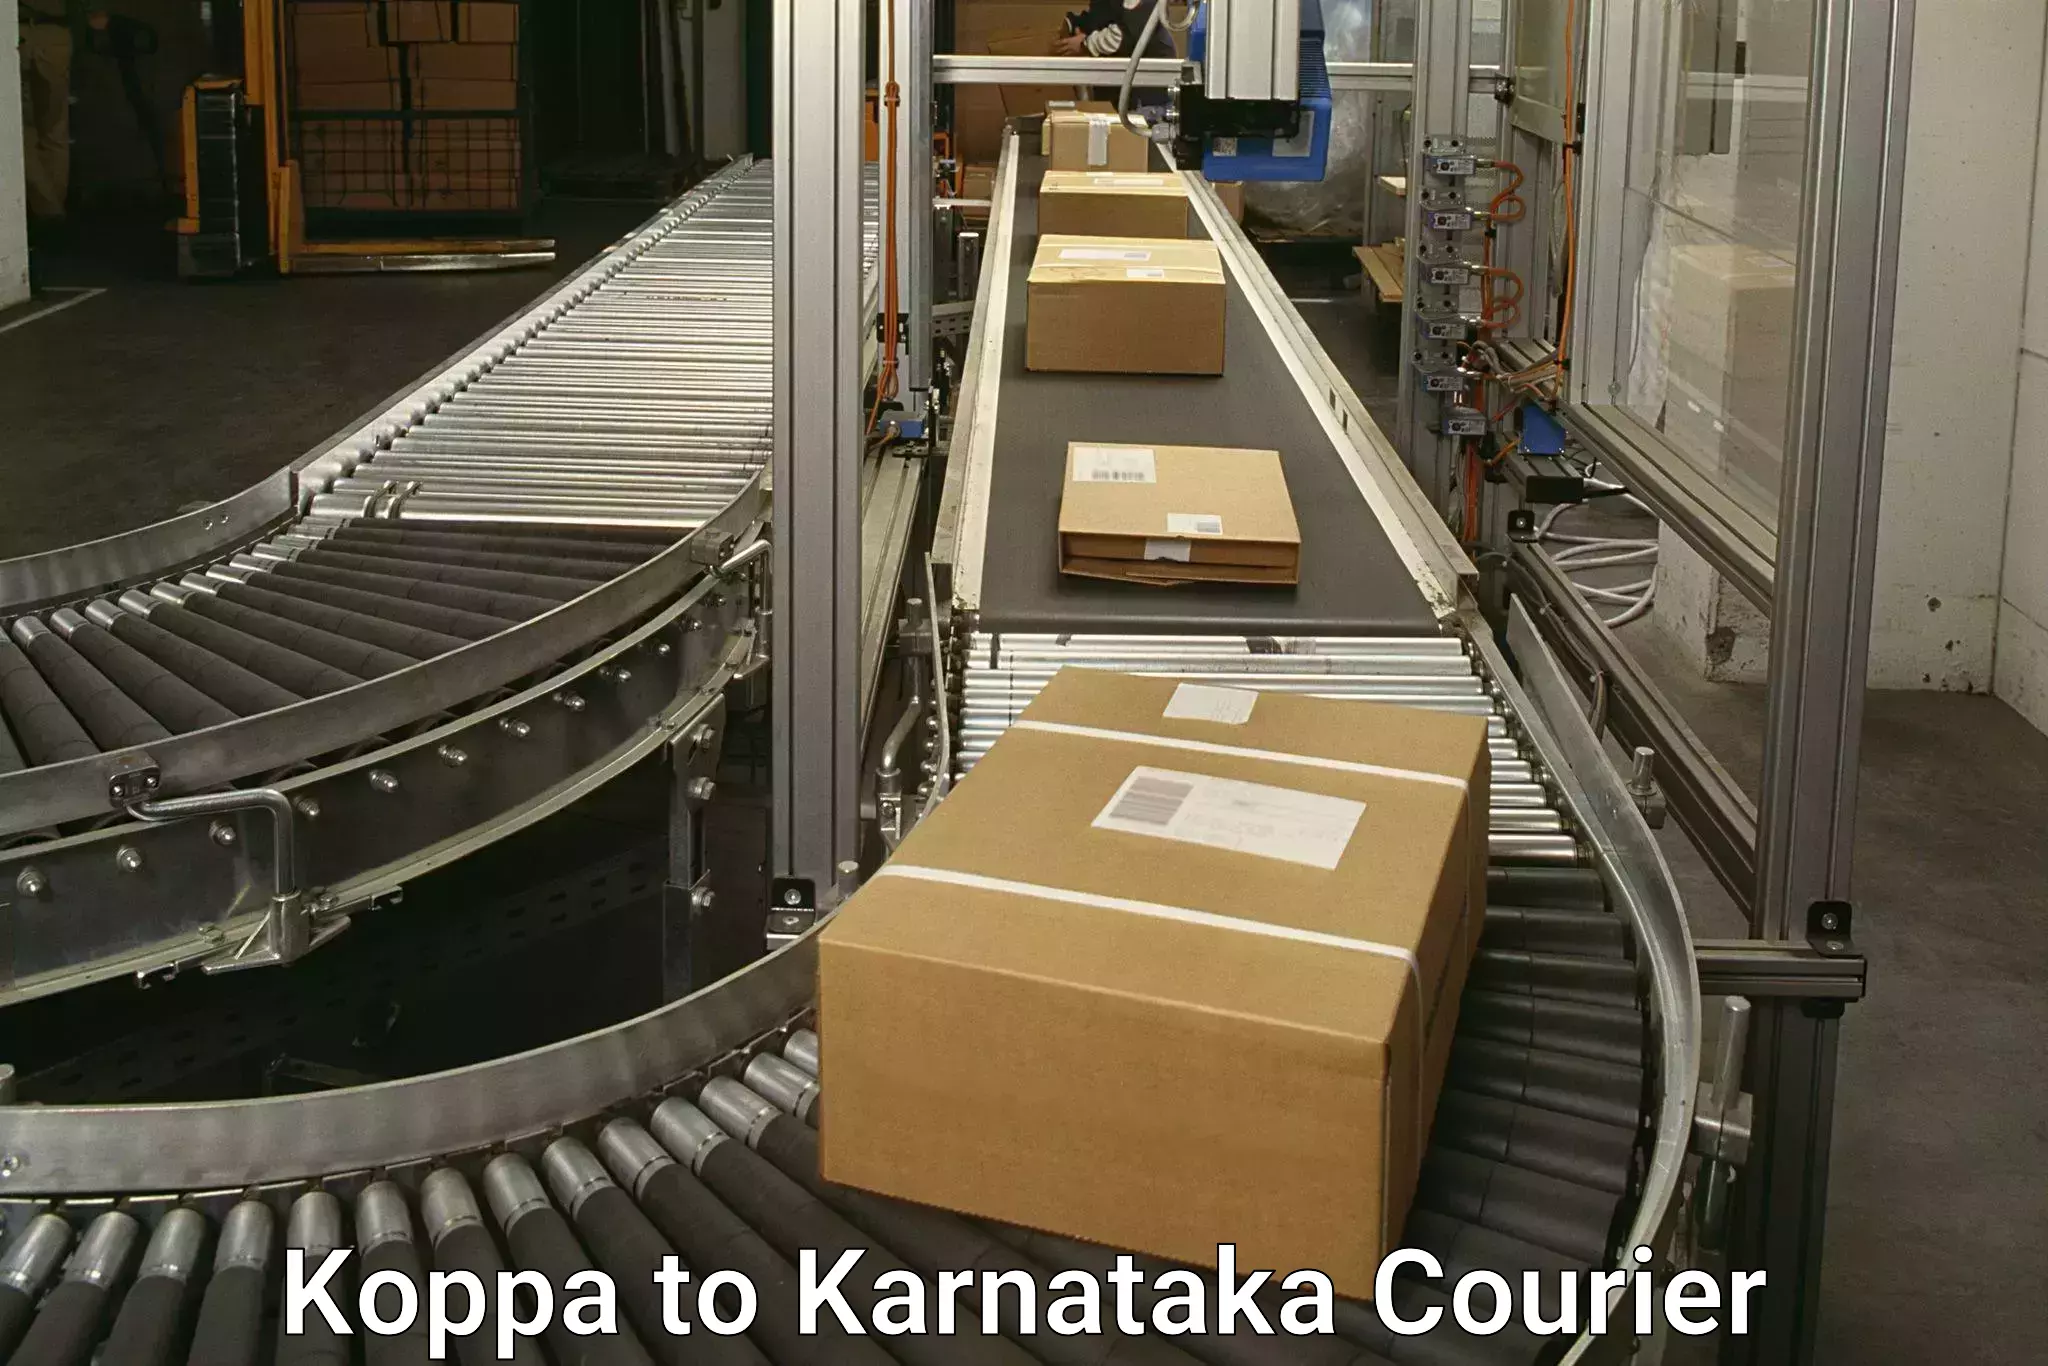 Digital courier platforms Koppa to Bangarapet